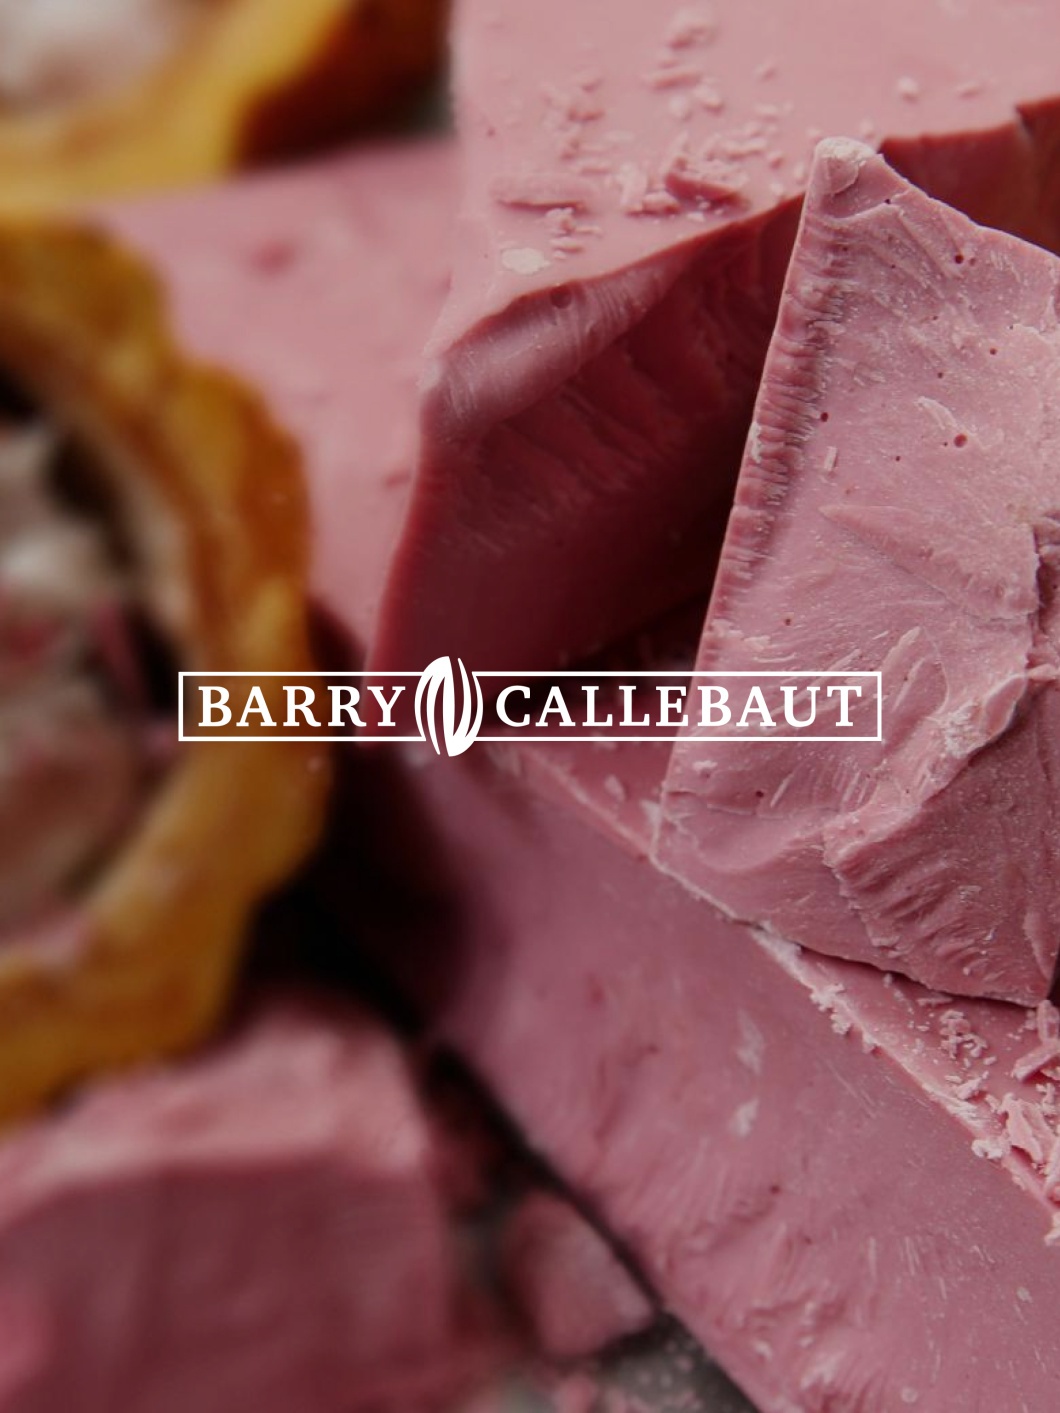 Barry Callebaut teaser